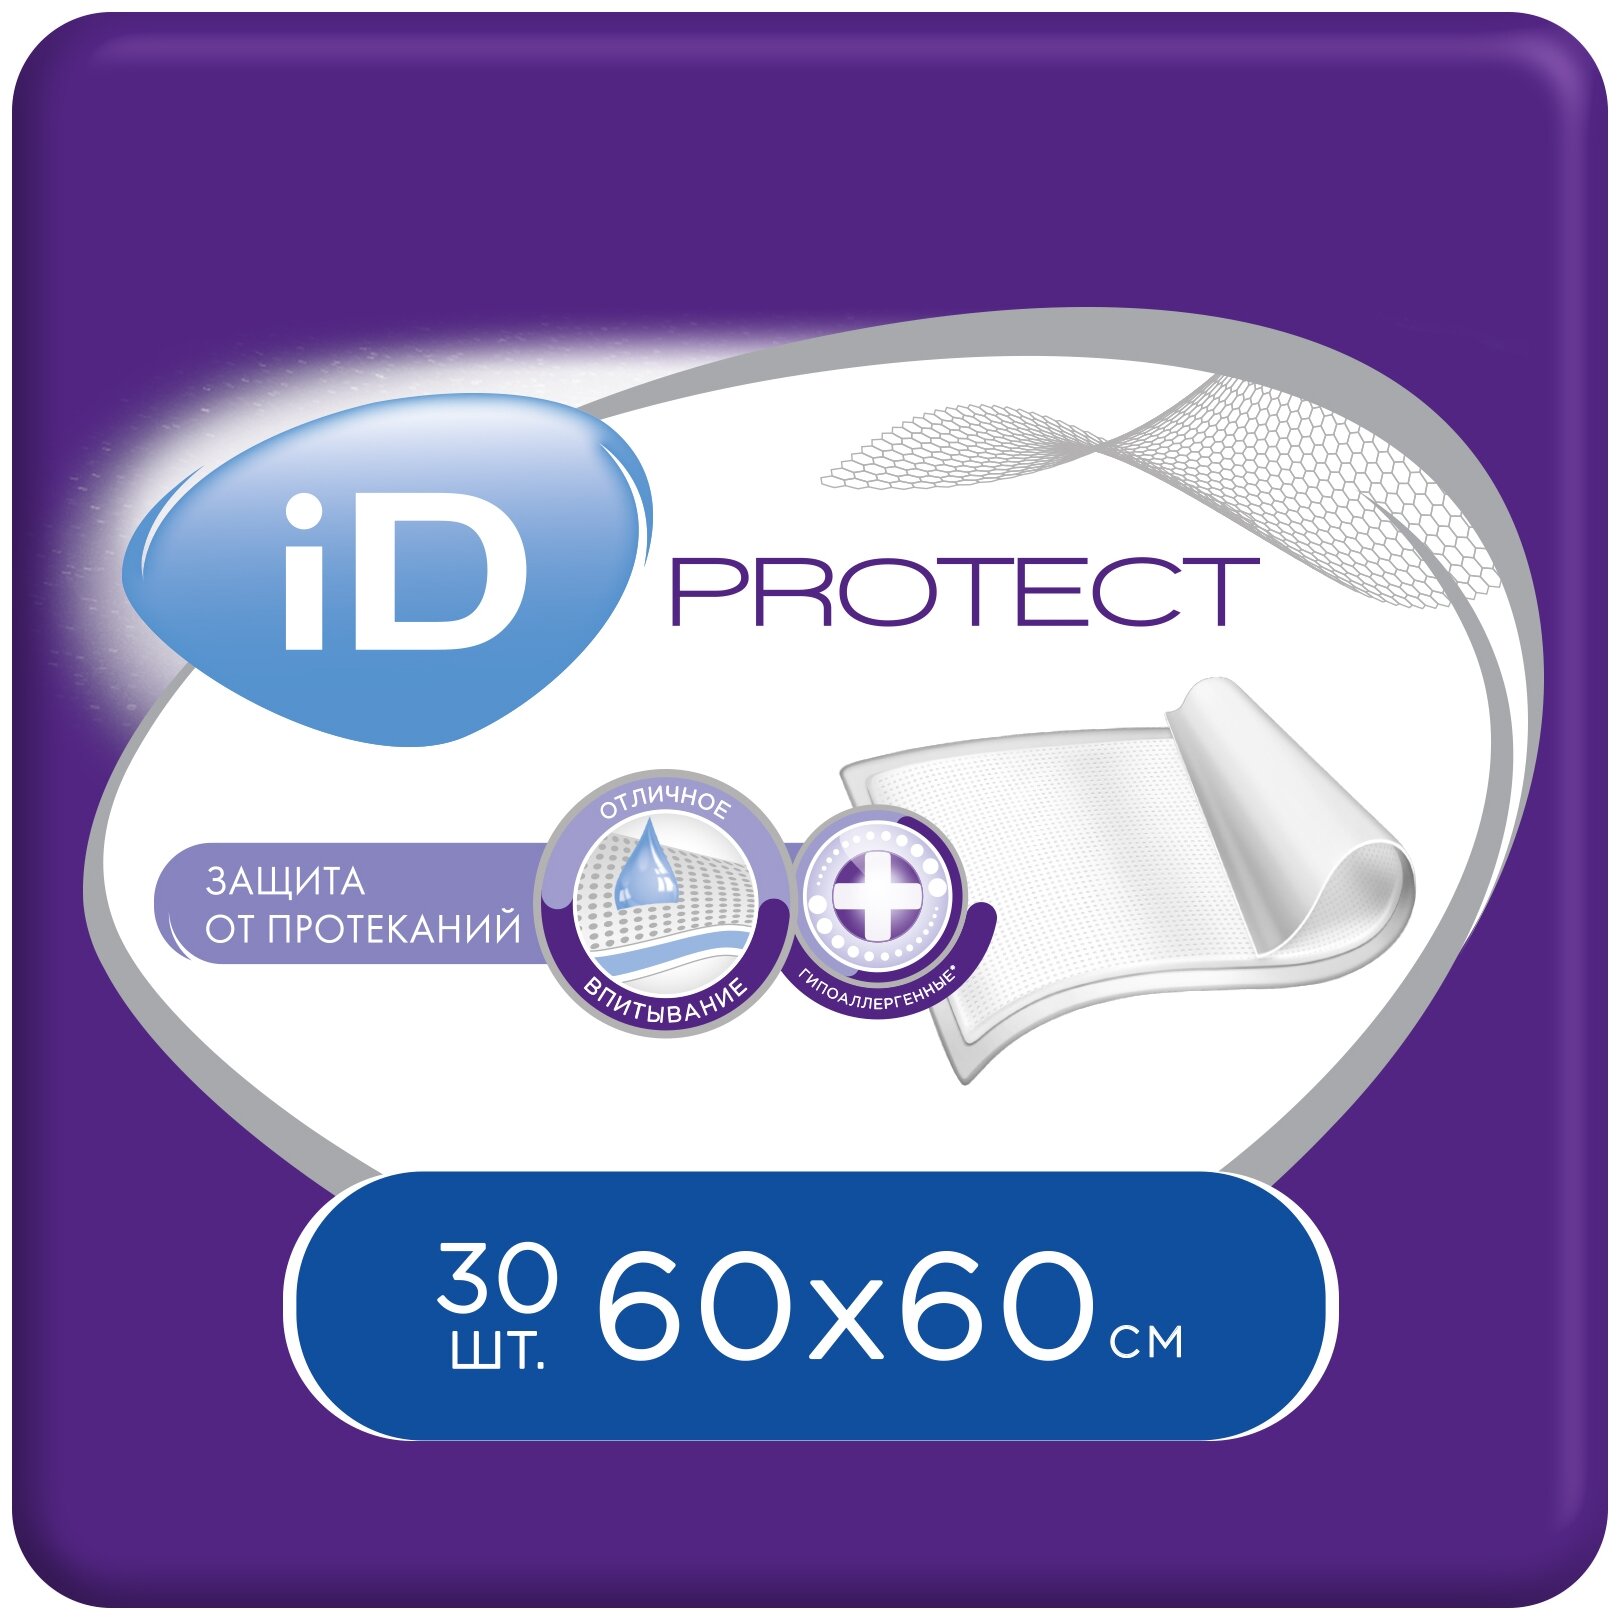 Пеленки ID Protect 60 х 60 см (30 шт.)